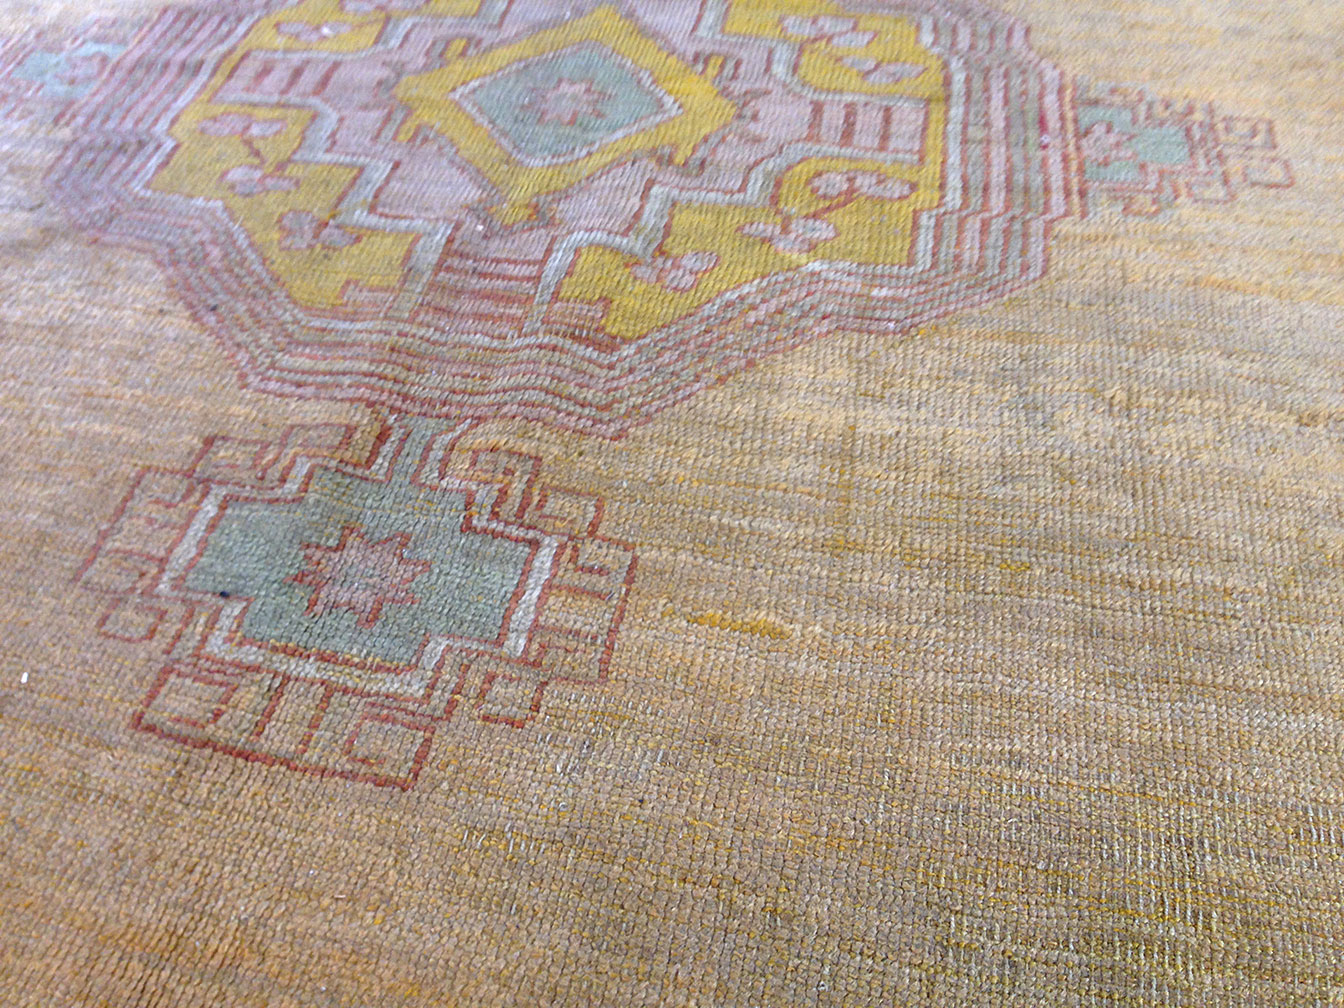 Antique oushak Carpet - # 50411